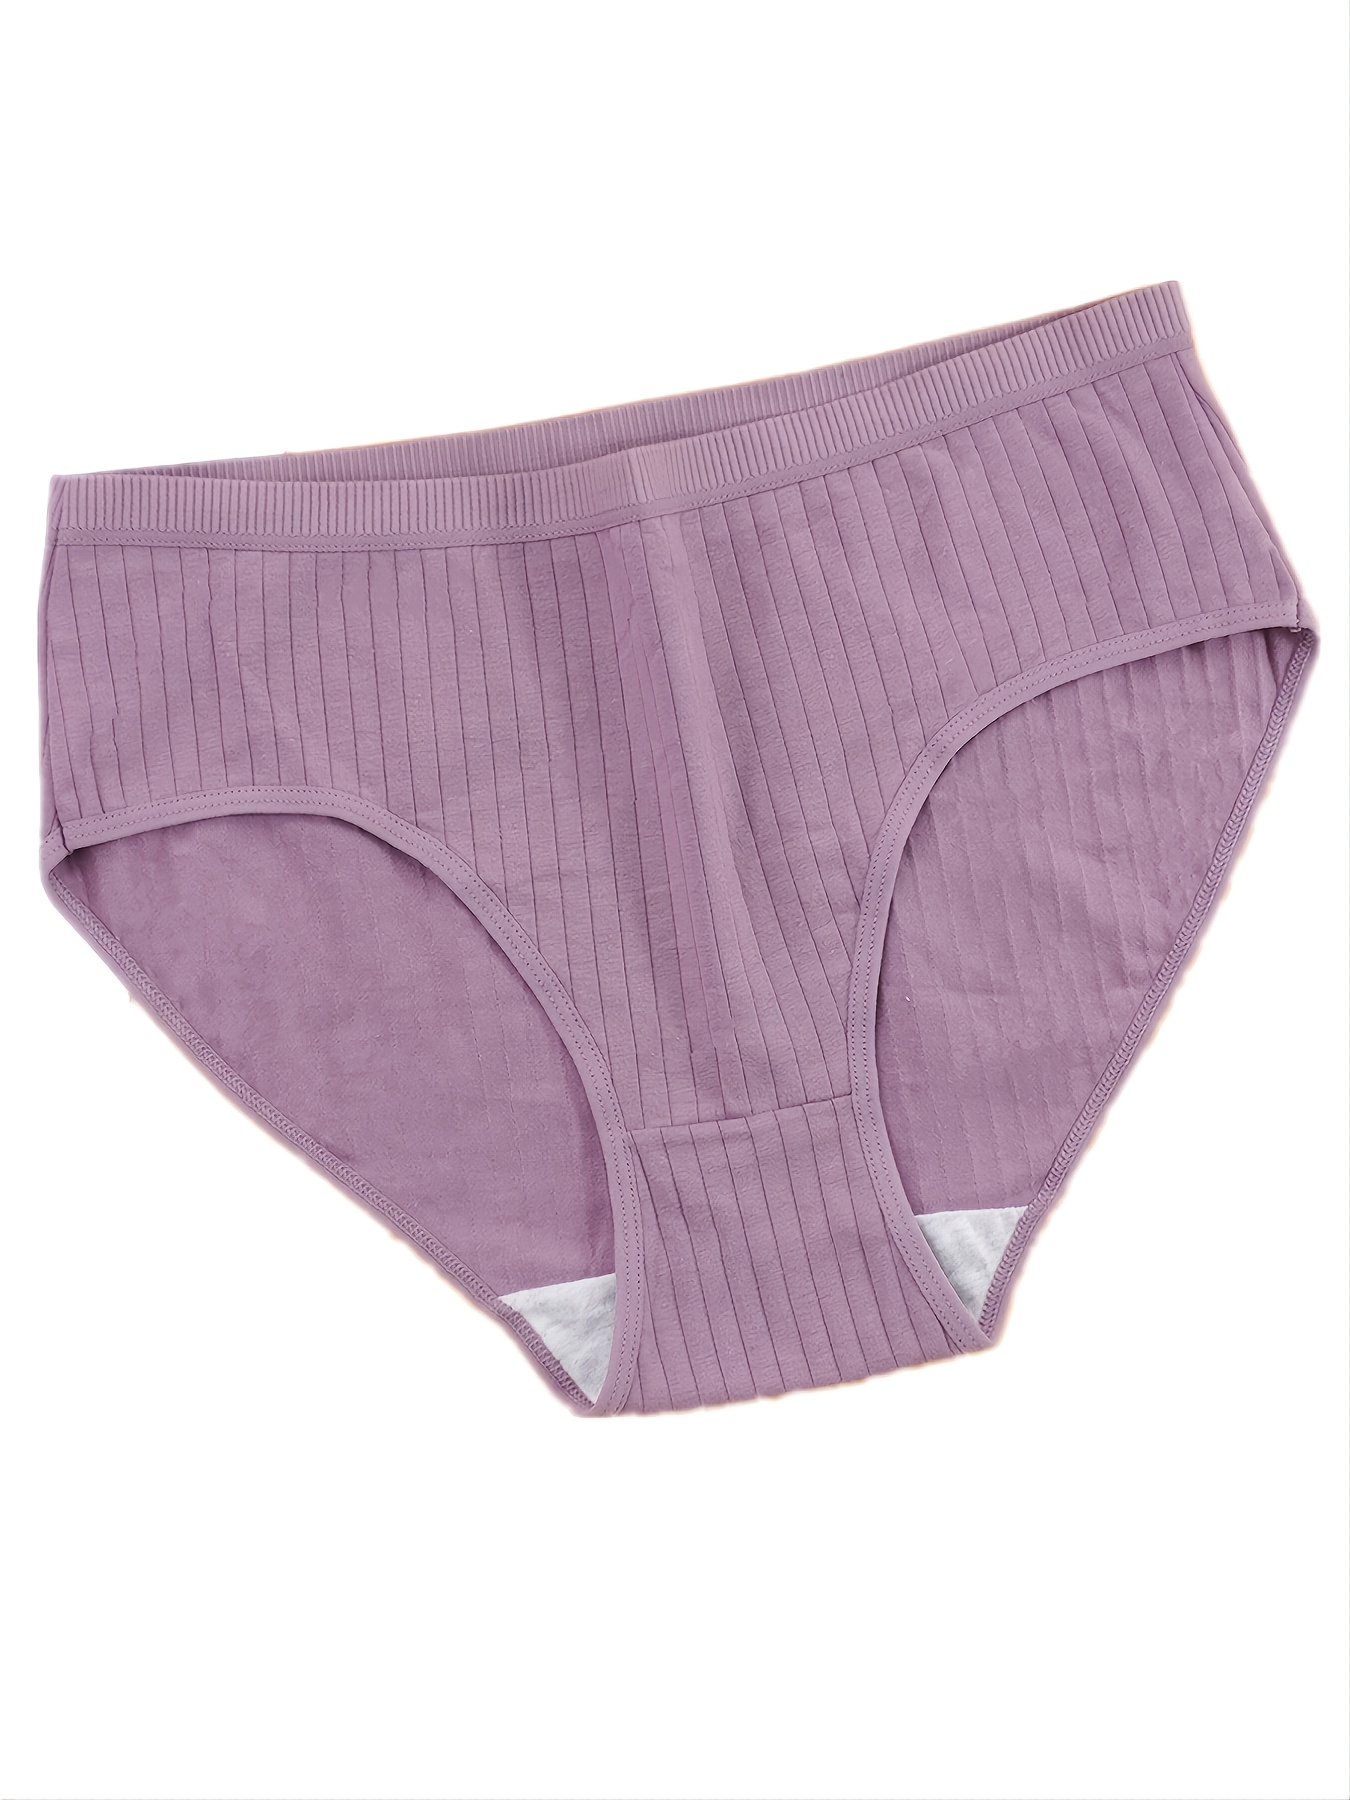 S-4XL Plus Size Women Cotton Panties Soft Mid Waist Underwear Solid Color  Panties Comfort Female